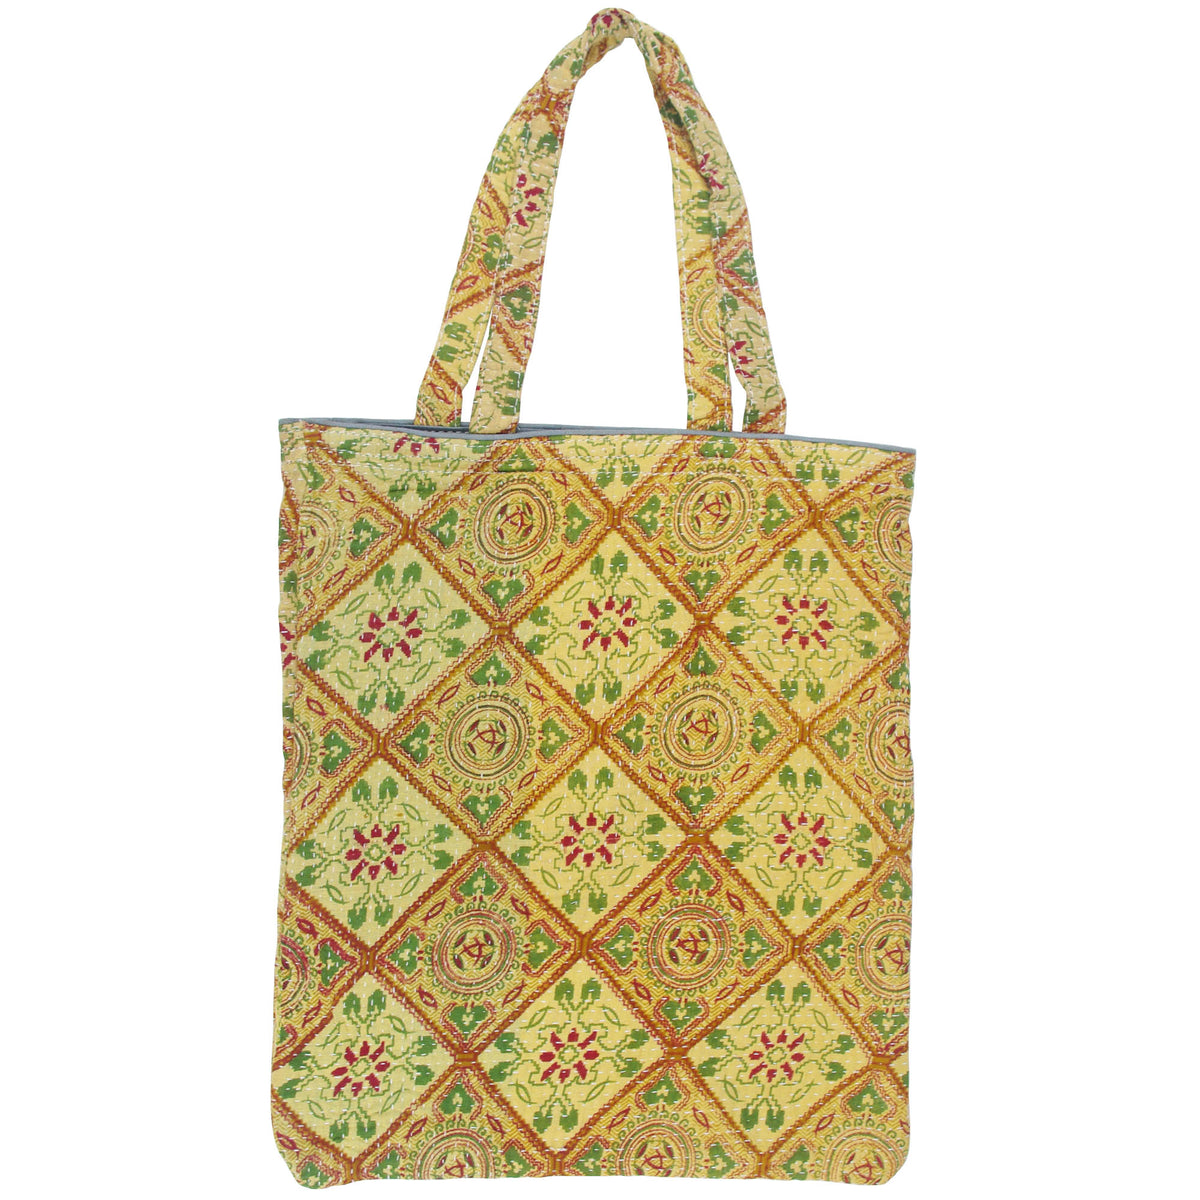 Vintage Fine Kantha Stitched Cotton Tote Bag- Sand Brown